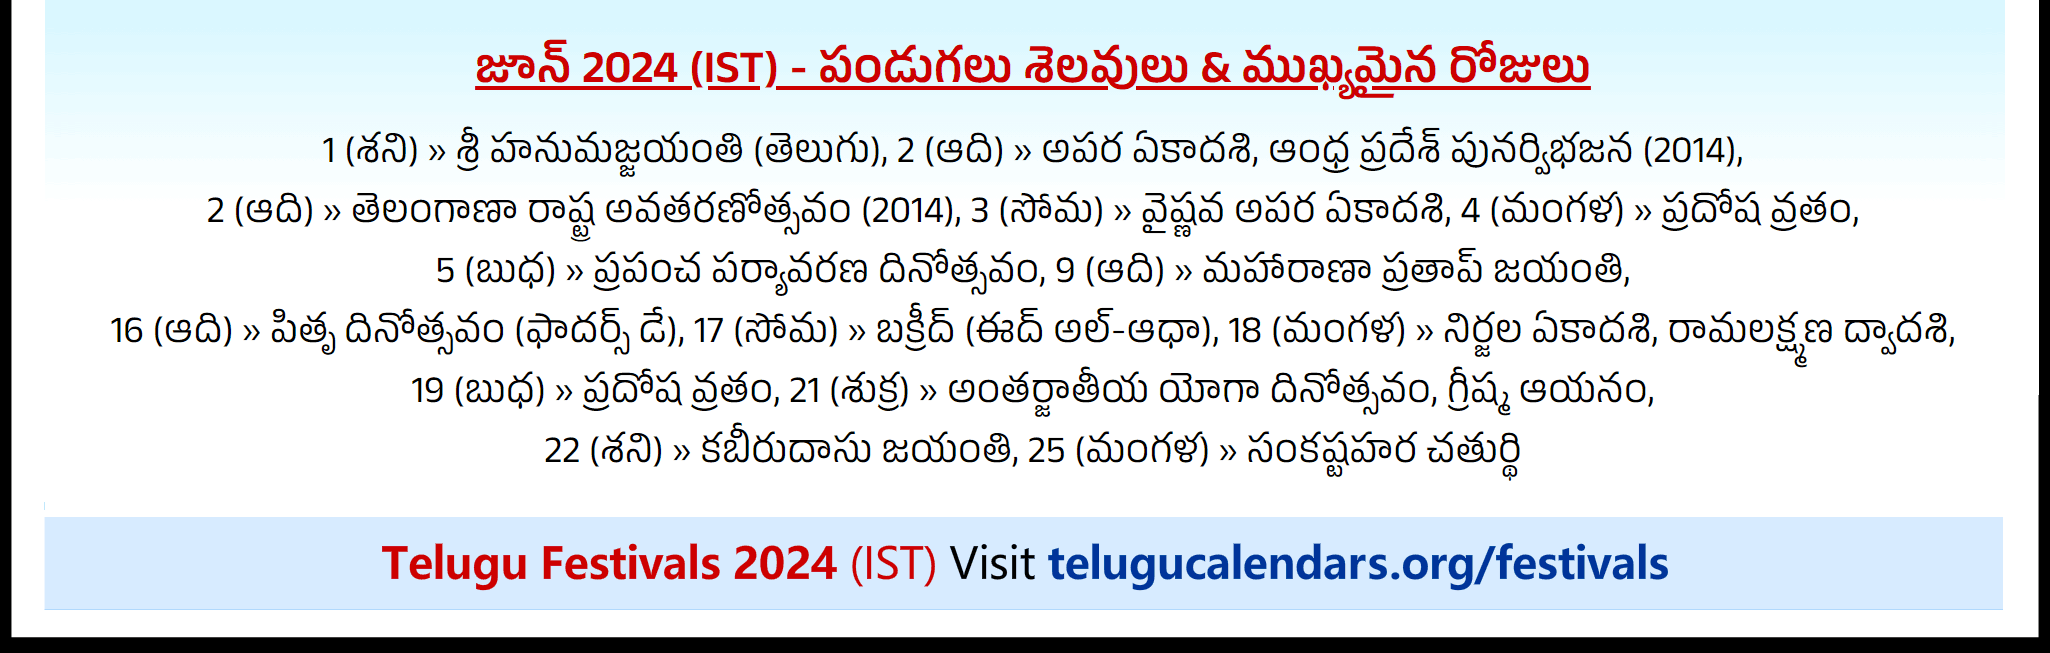 Telugu Festivals 2024 June Auckland